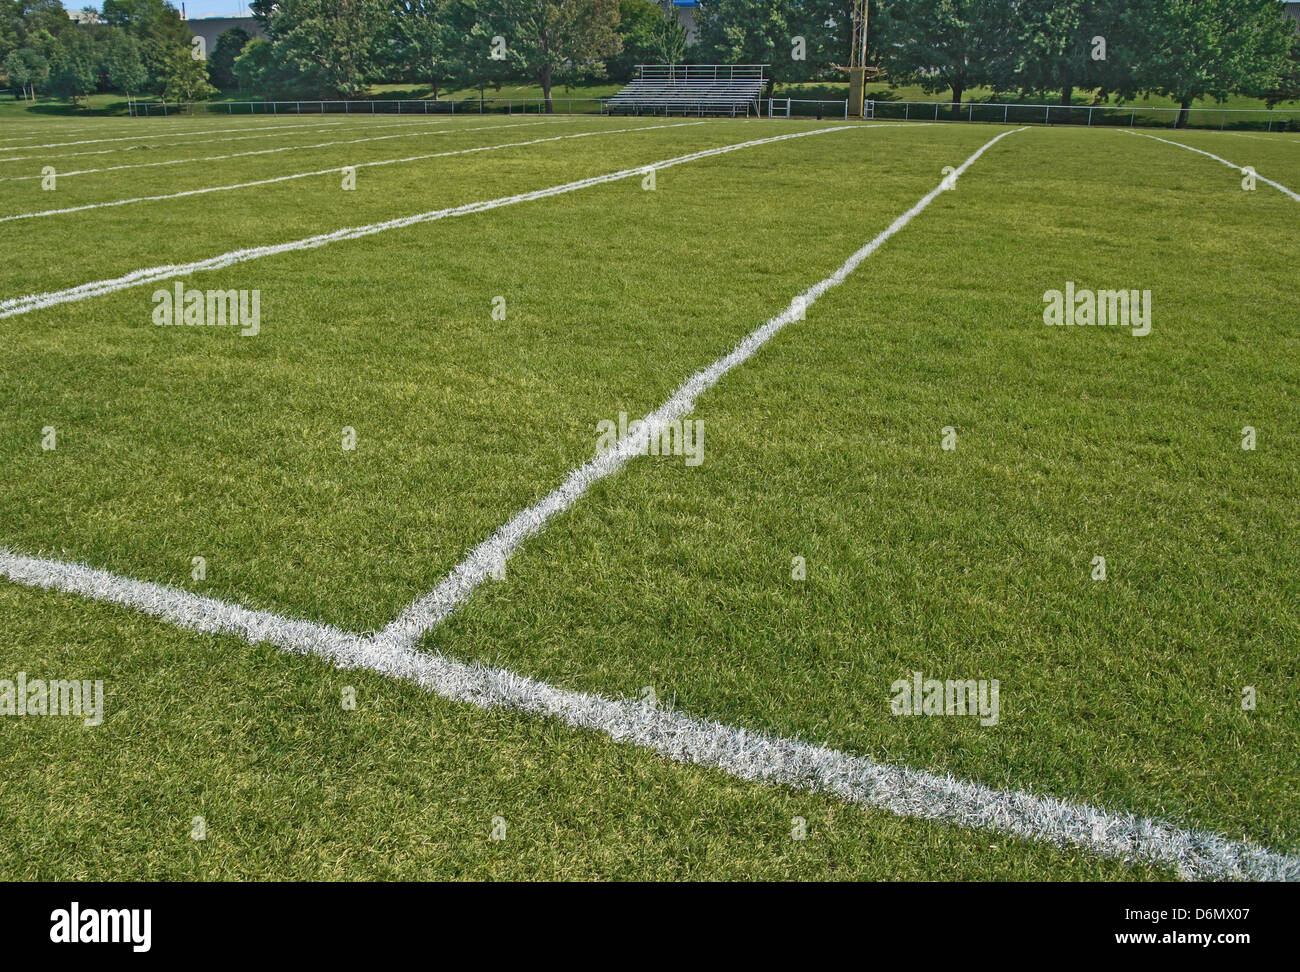 Campo de juego de fútbol americano con lineas blancas. Foto de stock